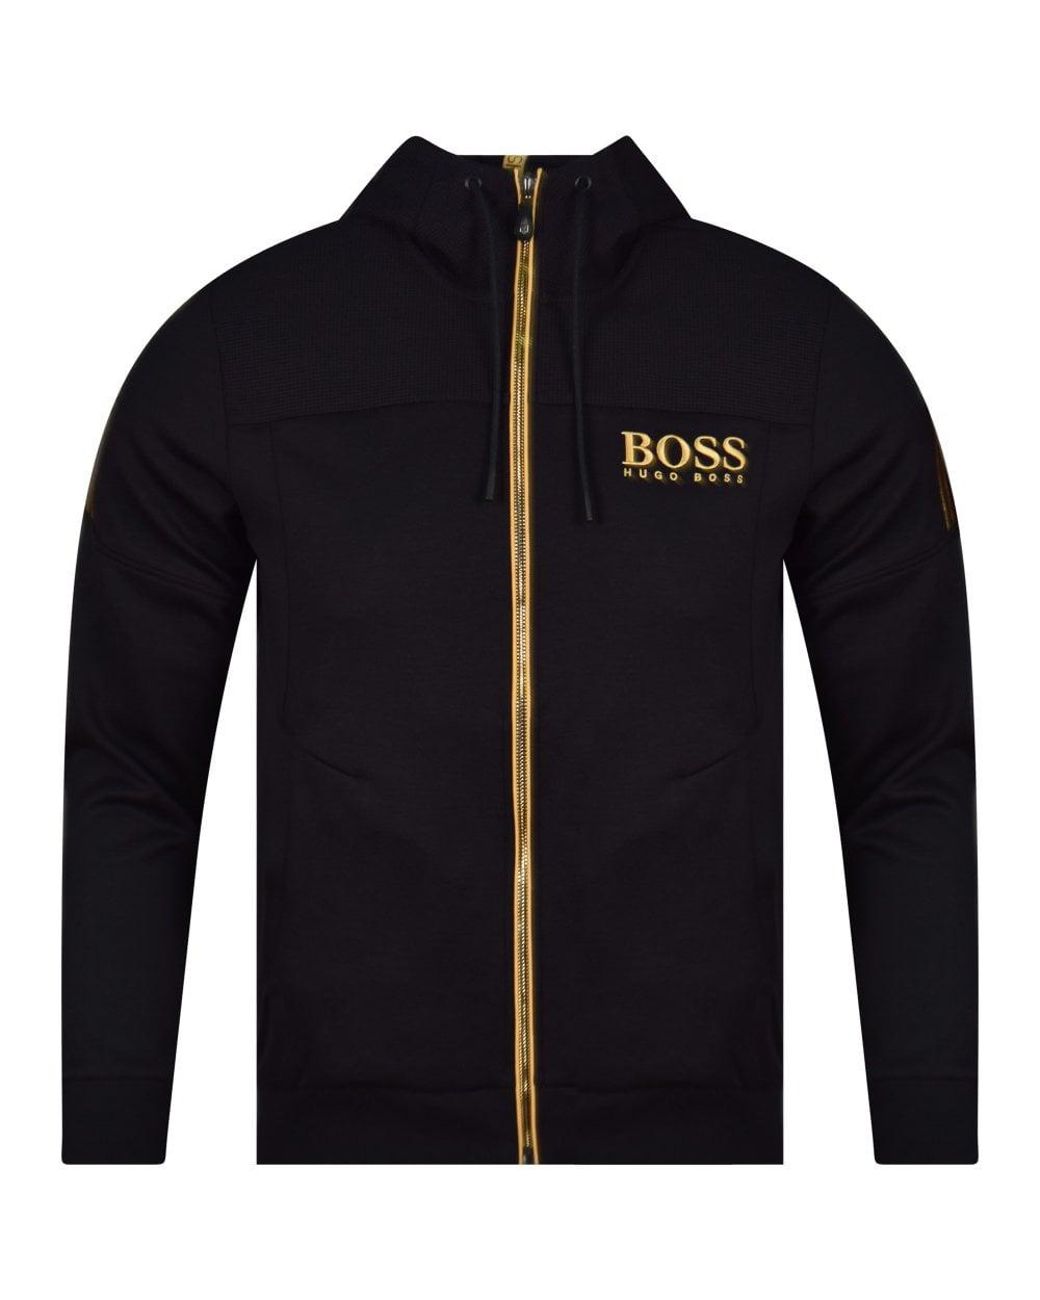 Bergbeklimmer Vijandig Kolibrie BOSS by HUGO BOSS Black/gold Logo Hoodie for Men | Lyst